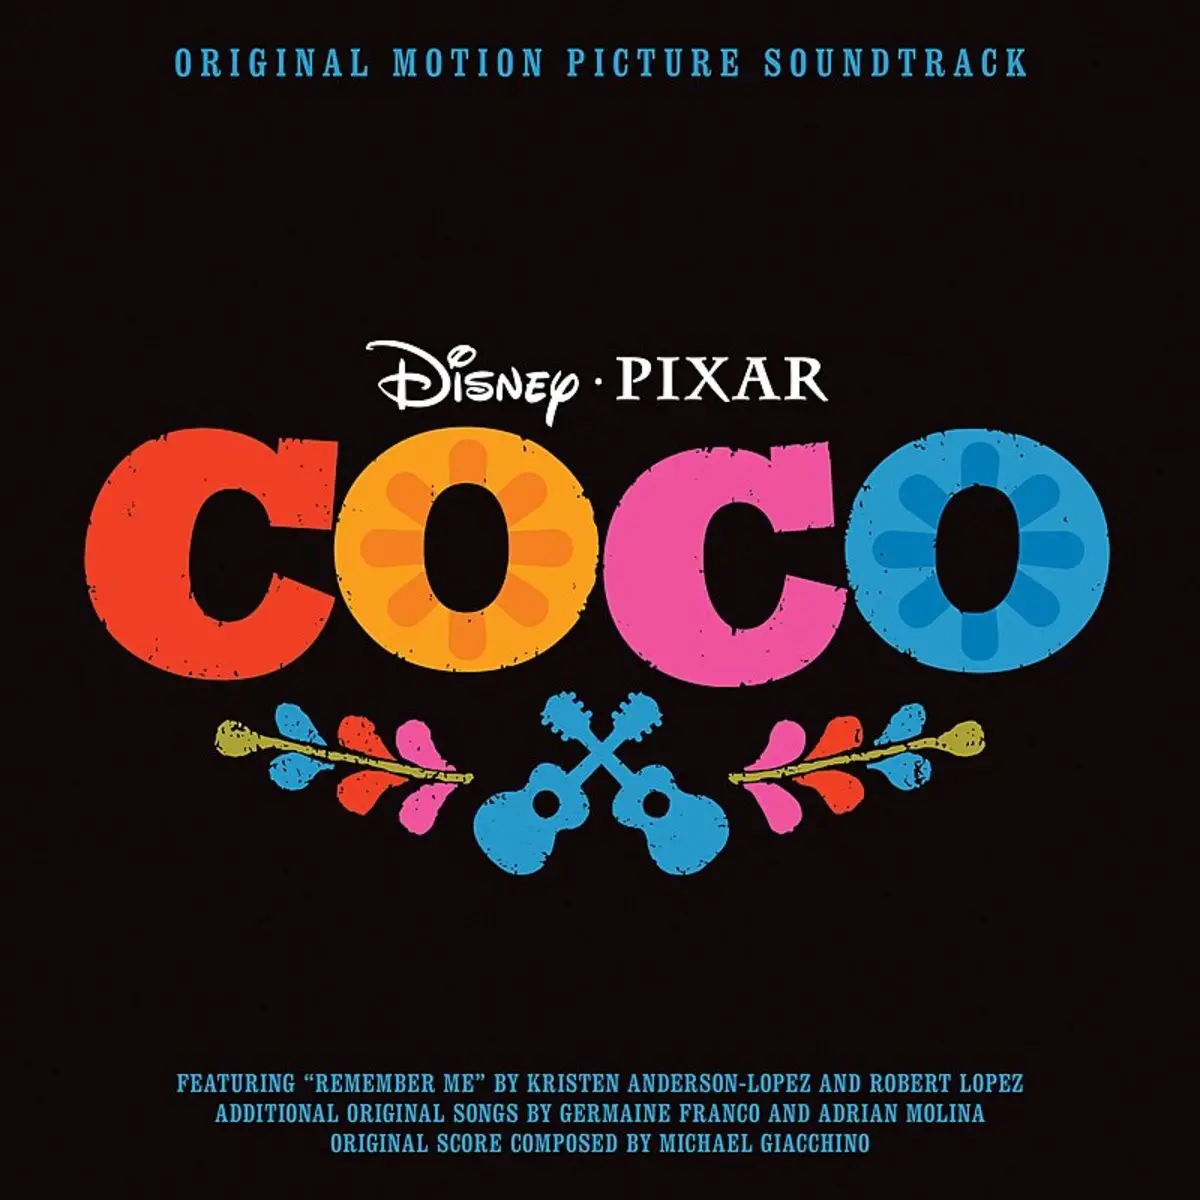 Un Poco Loco Lyrics In English Coco Original Motion Picture Soundtrack Un Poco Loco Song Lyrics In English Free Online On Gaana Com - poco loco roblox id